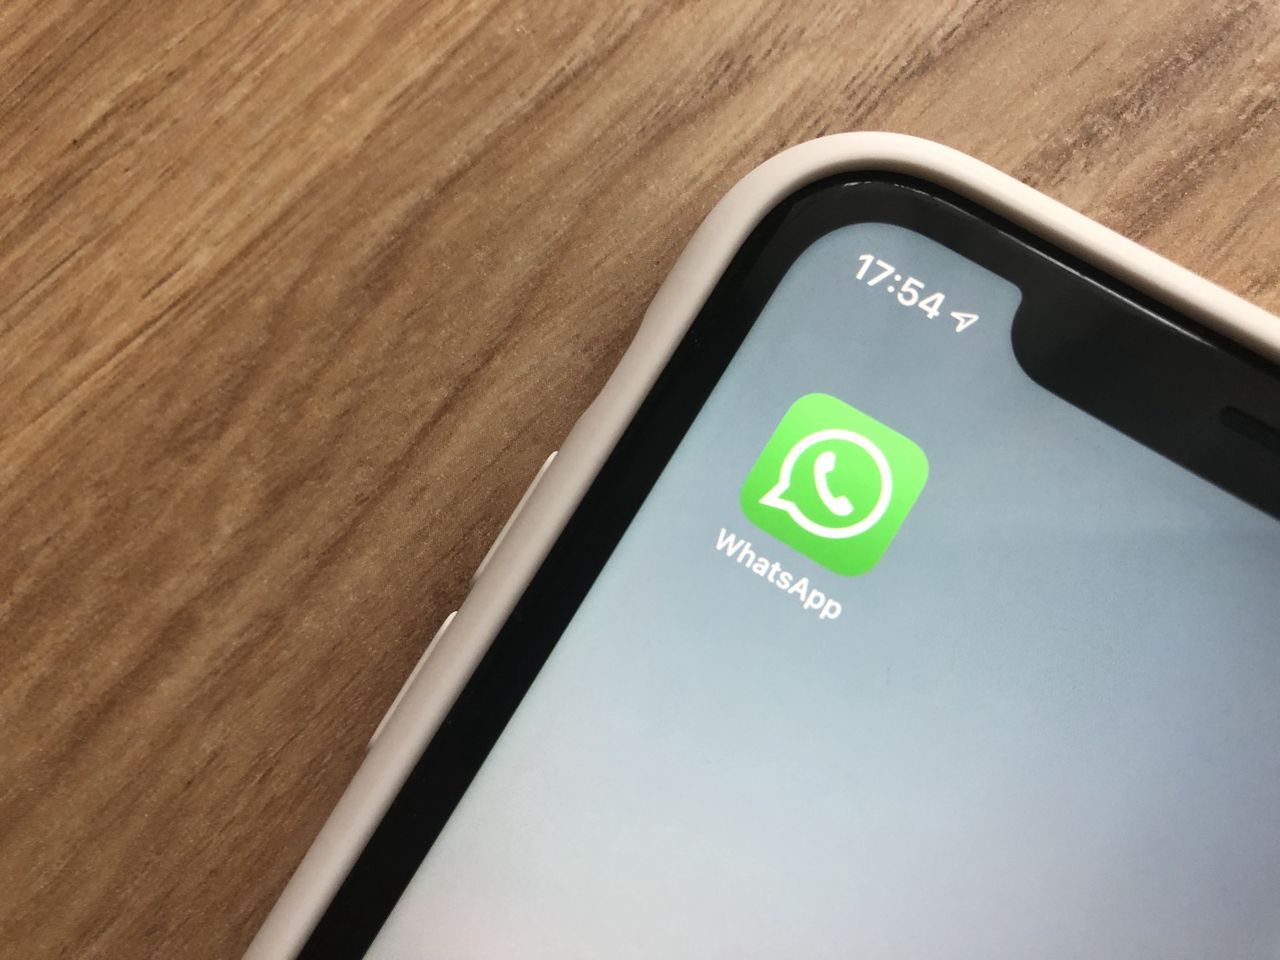 WhatsApp pozwala się ukryć. Kontakty nie sprawdzą kiedy byliśmy online